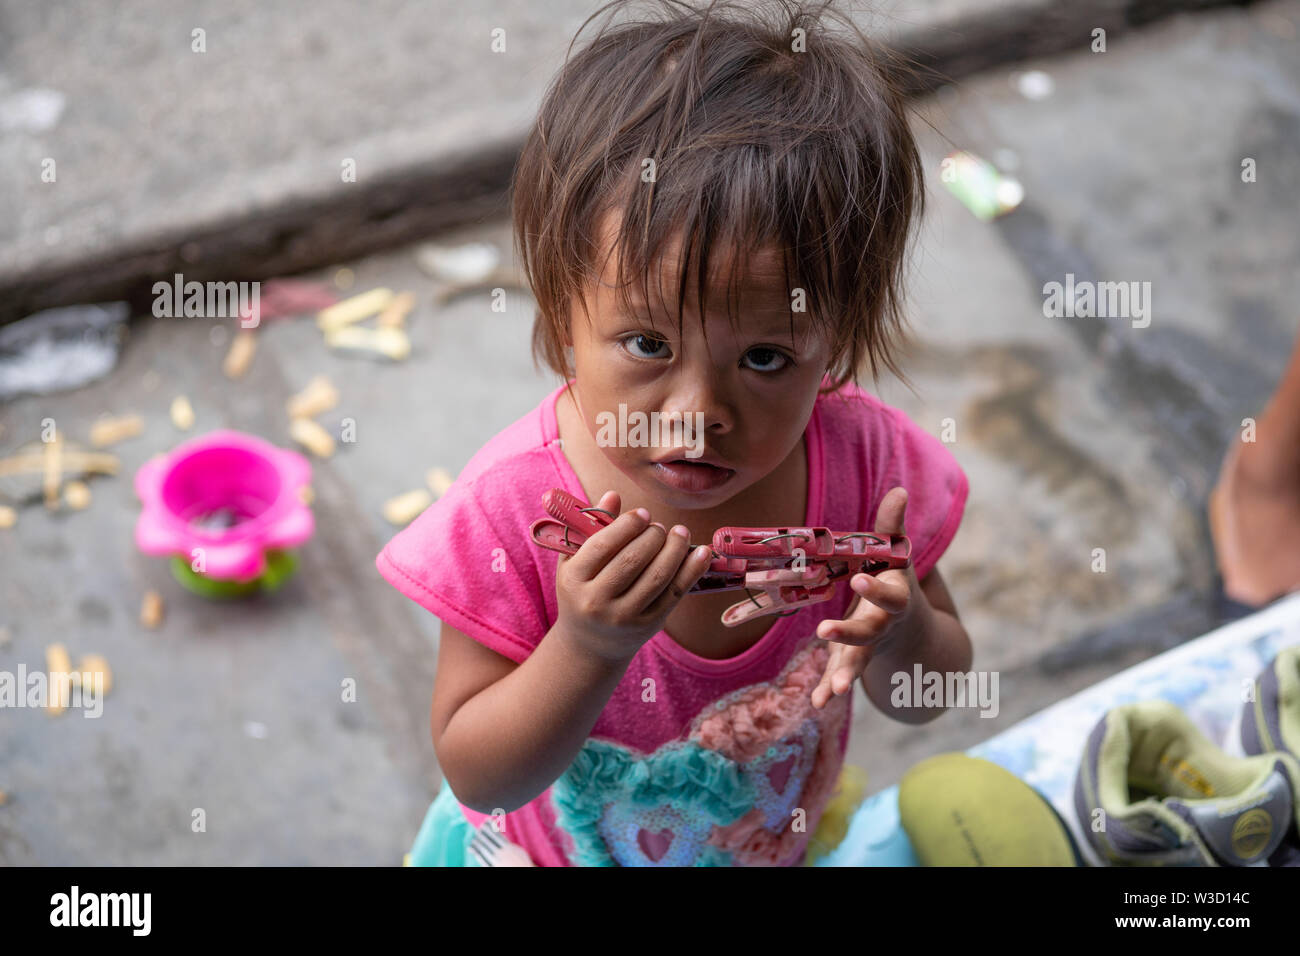 Una giovane ragazza filippina in una comunità povera giocando con un numero di pioli di plastica cercando fino alla fotocamera,Cebu, Filippine. Foto Stock